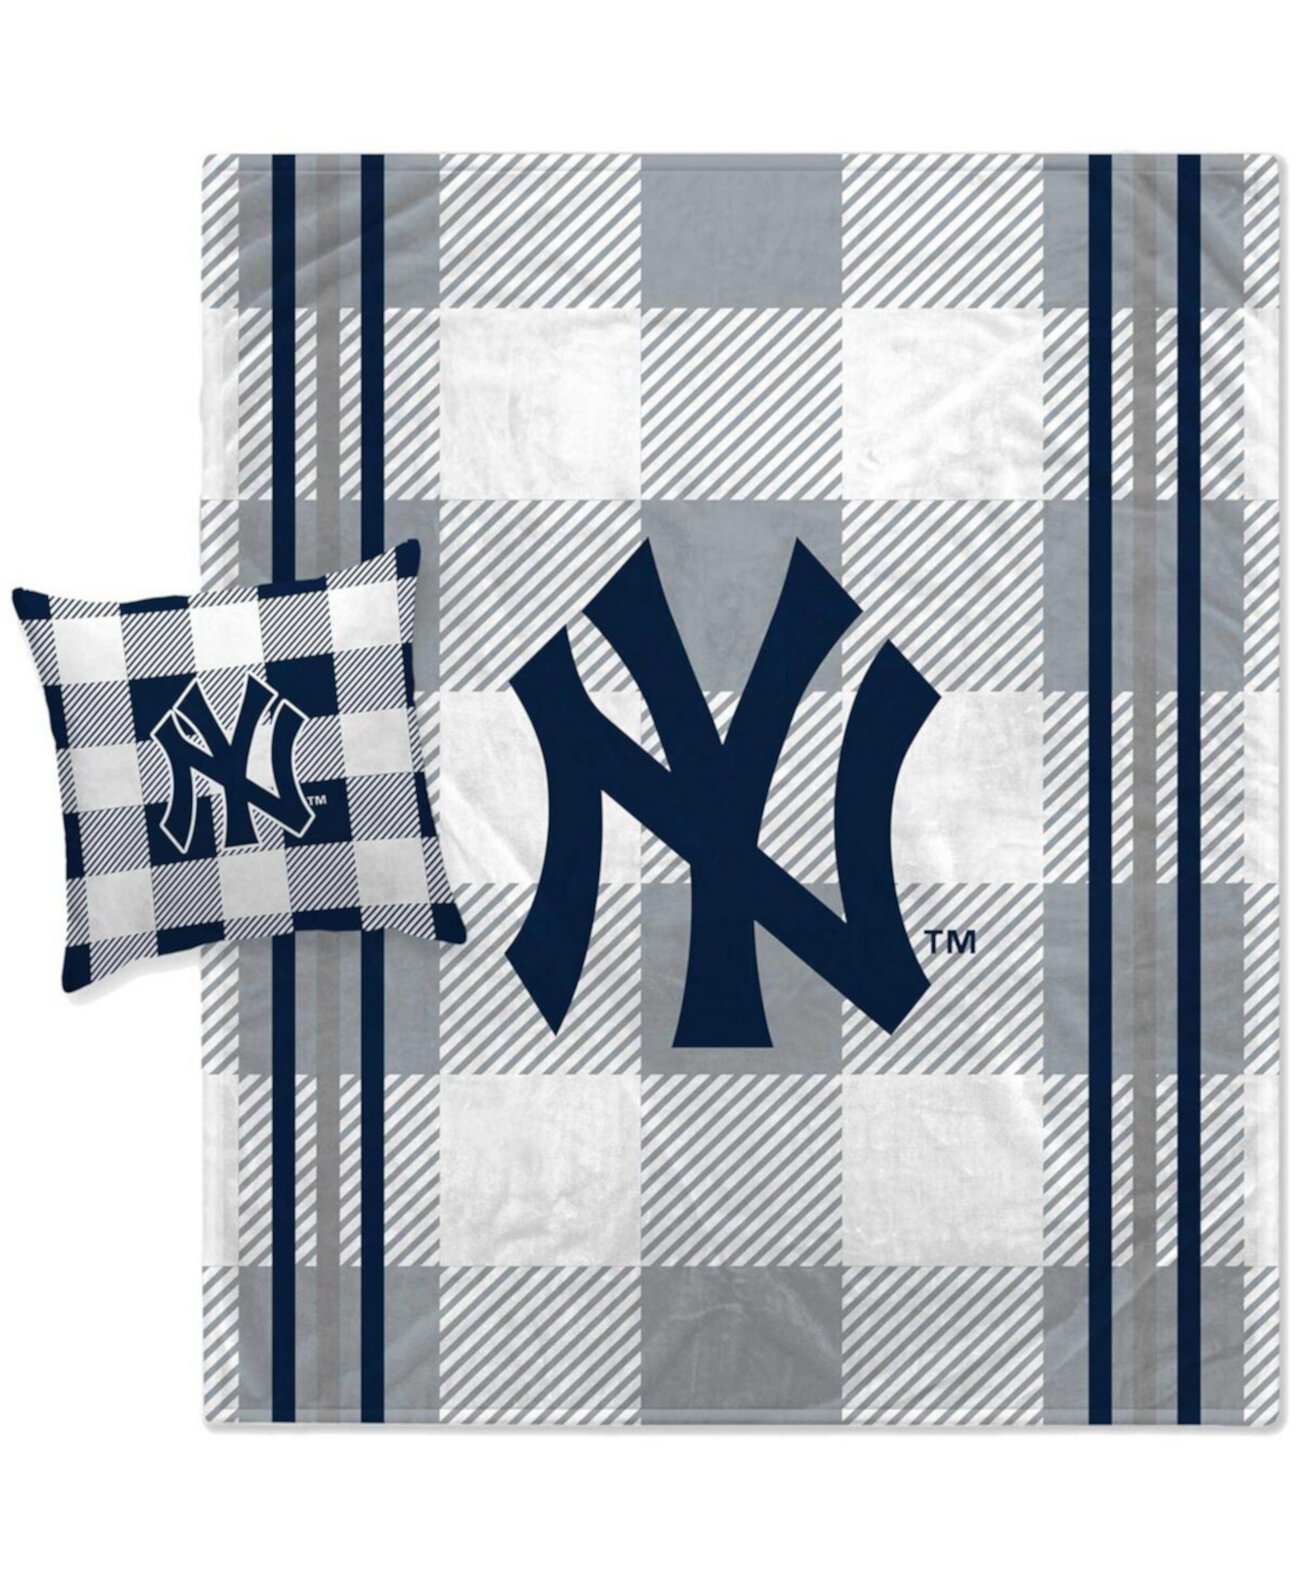 Комбинированный комплект из одеяла и подушек в серую клетку в полоску New York Yankees Pegasus Home Fashions